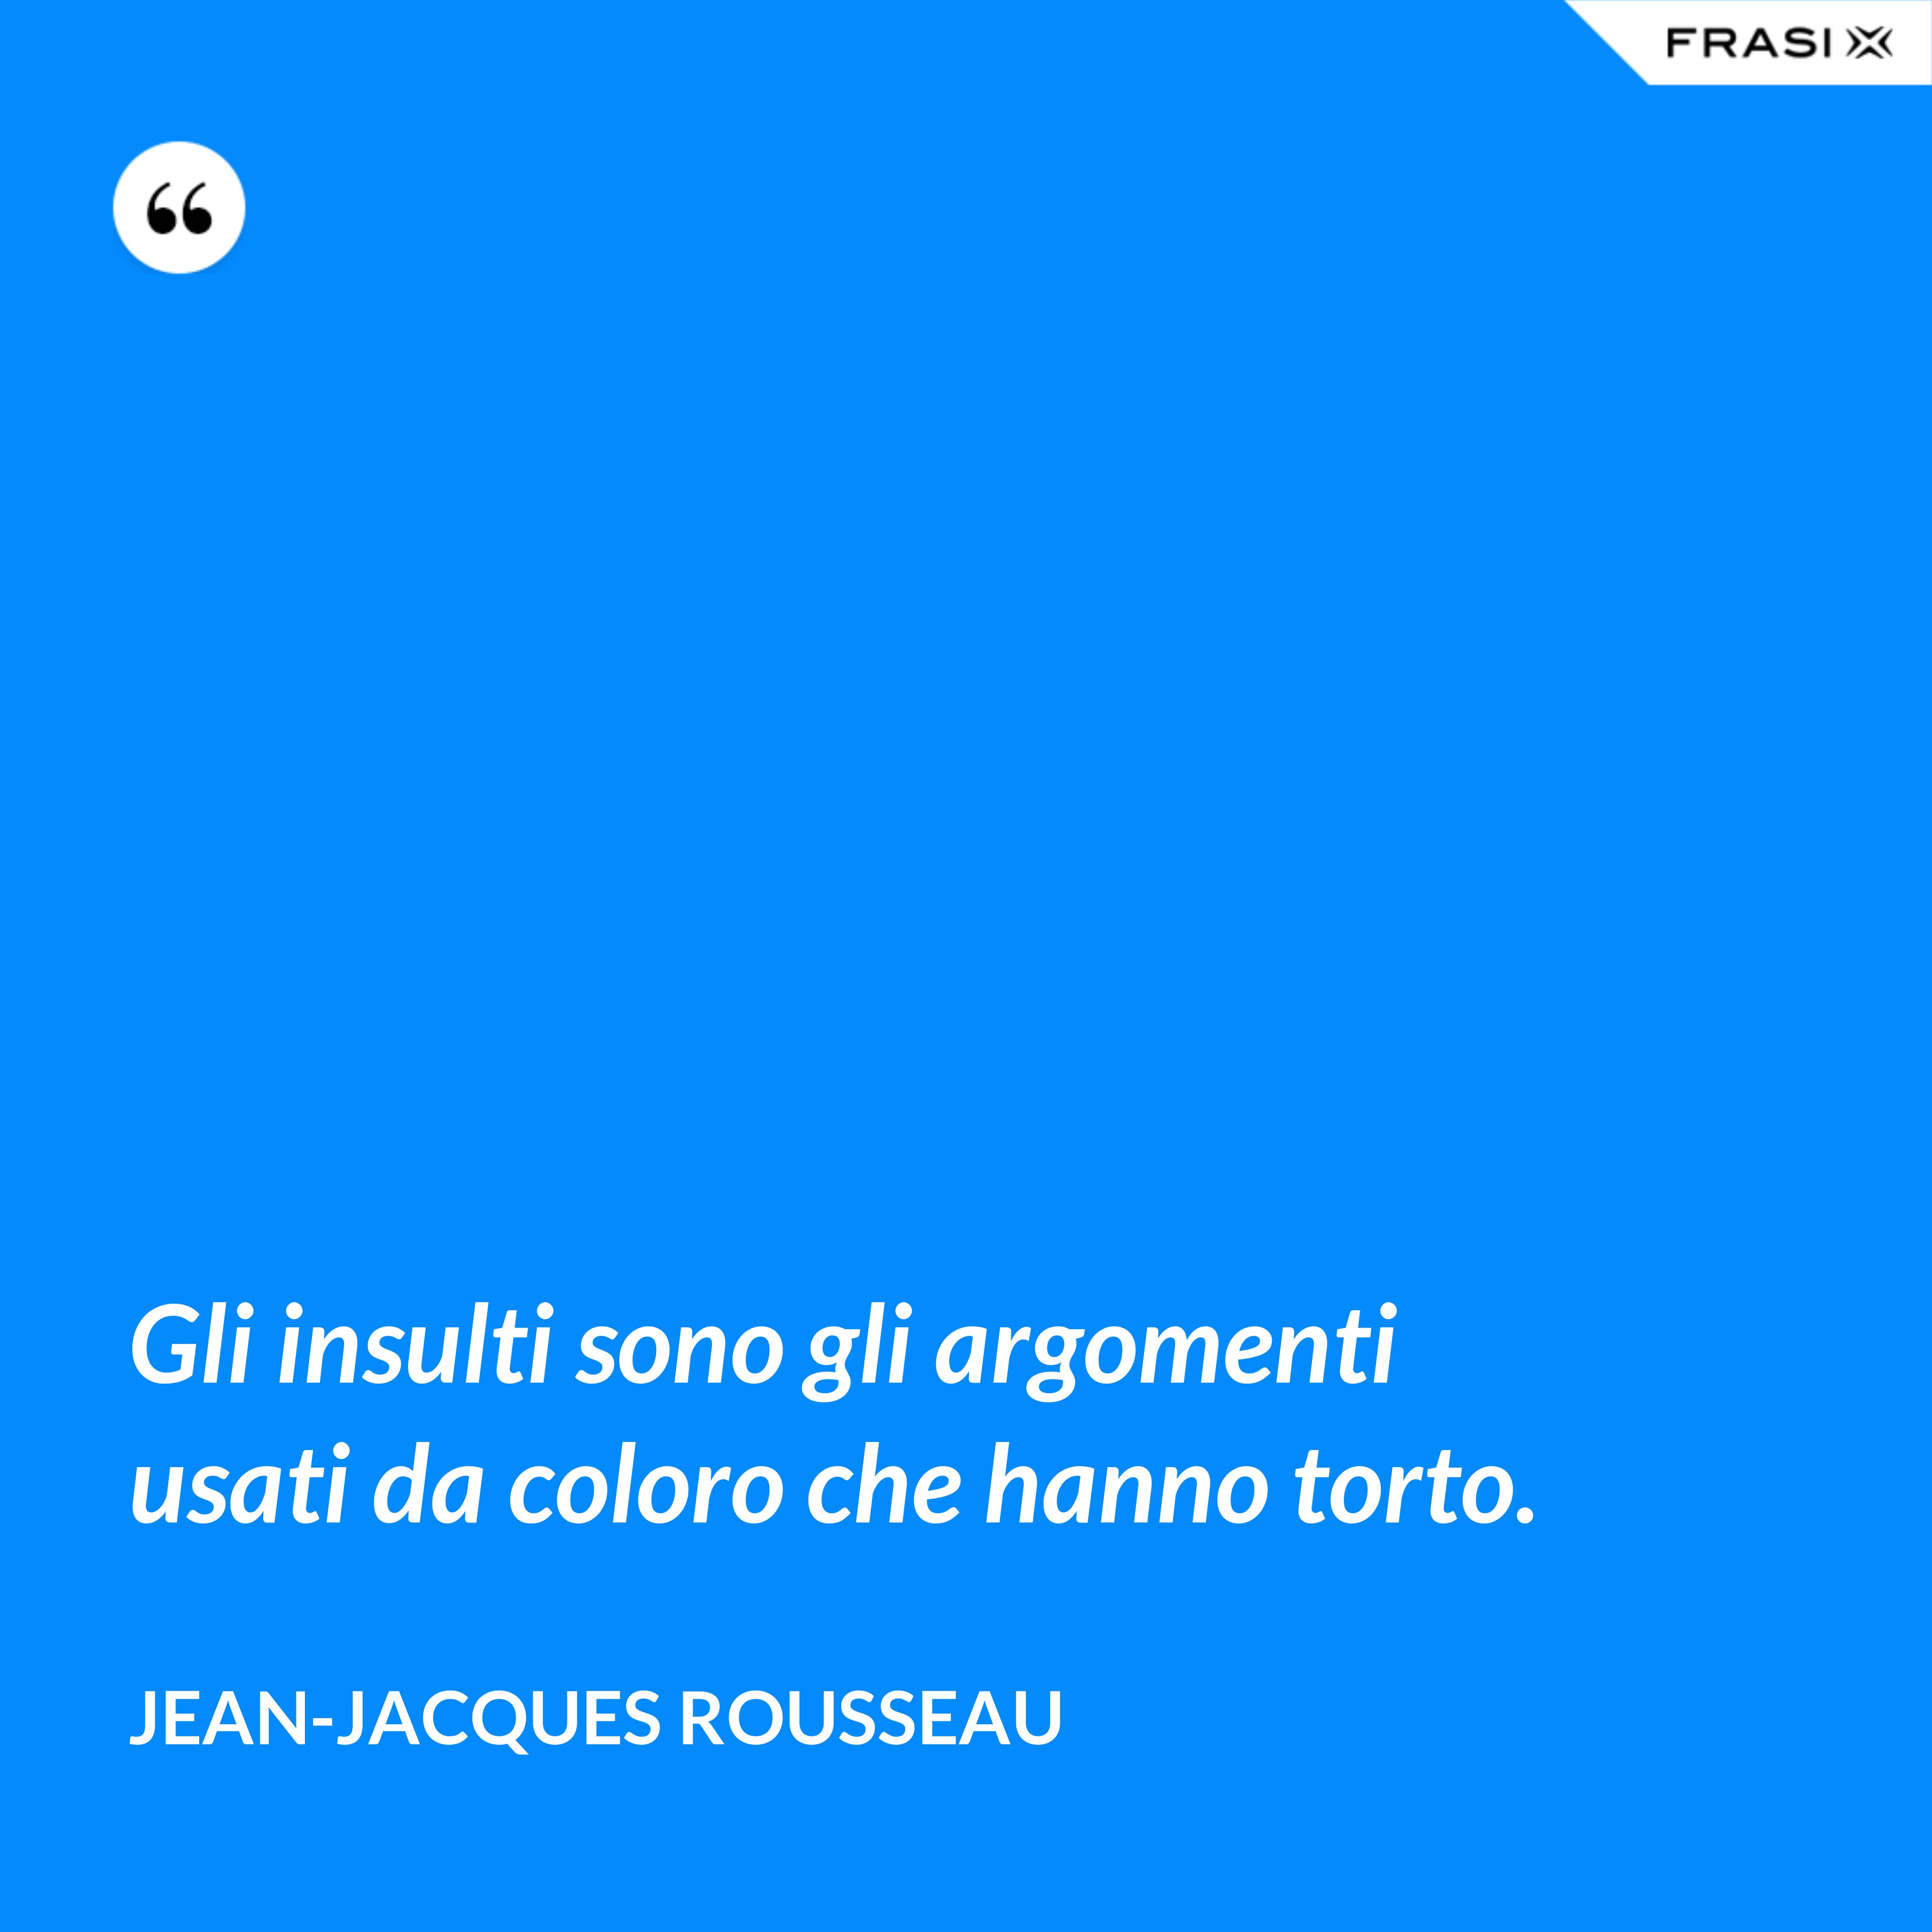 Gli insulti sono gli argomenti usati da coloro che hanno torto. - Jean-Jacques Rousseau